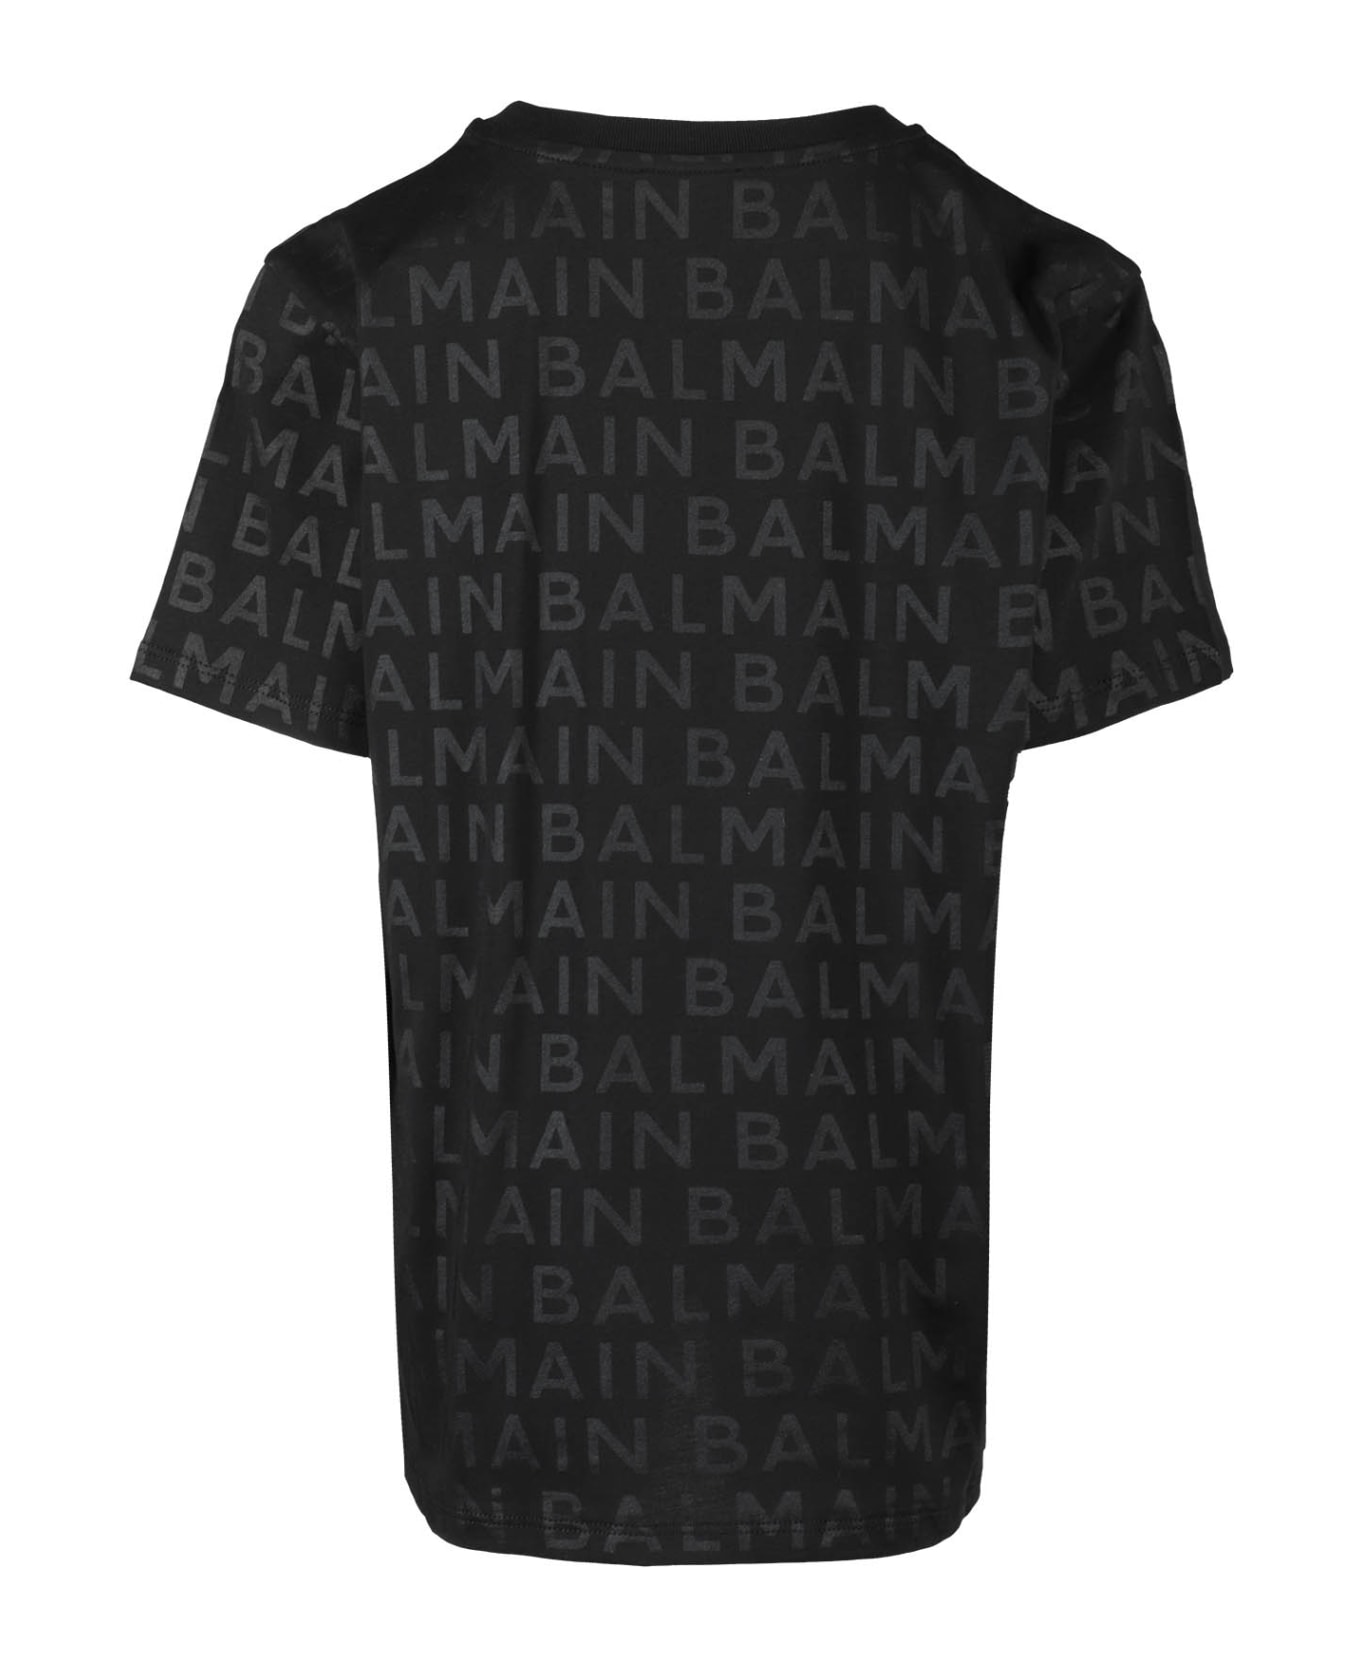 Balmain Tshirt - Ne Black